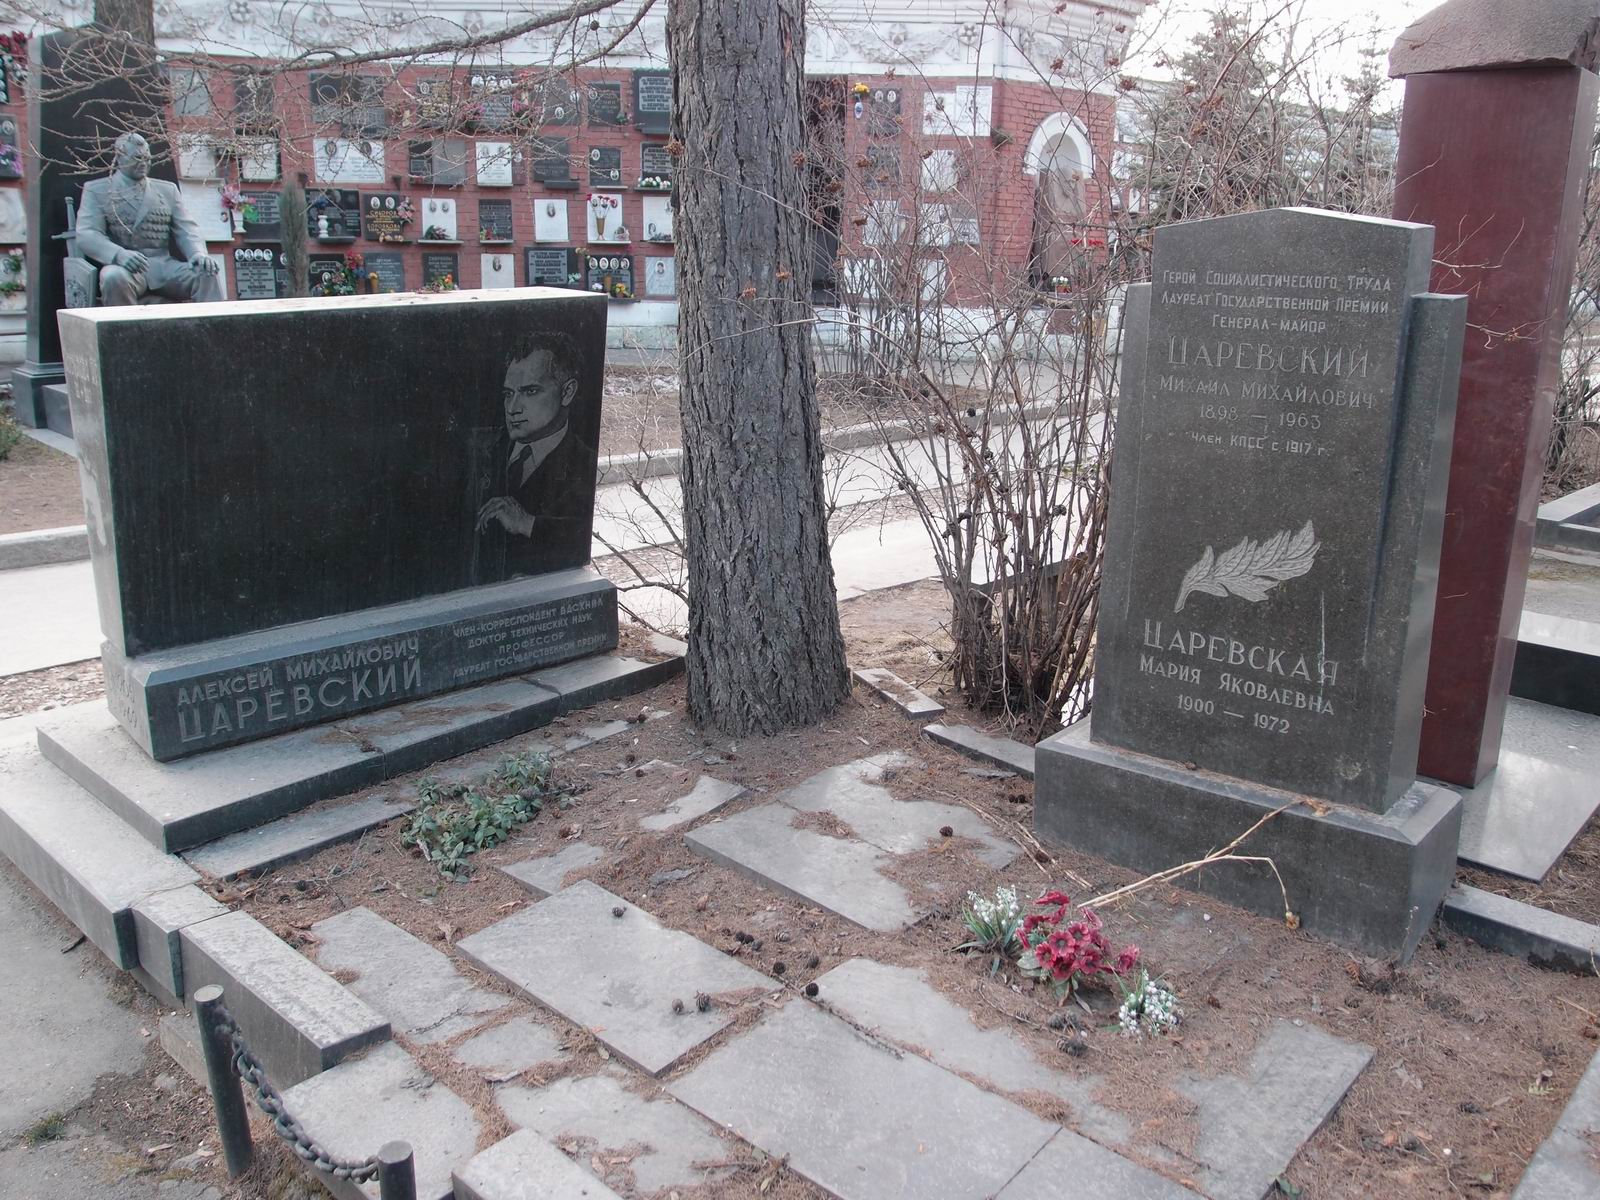 Памятник на могиле Царевского М.М. (1898-1963), на Новодевичьем кладбище (8-32-8).